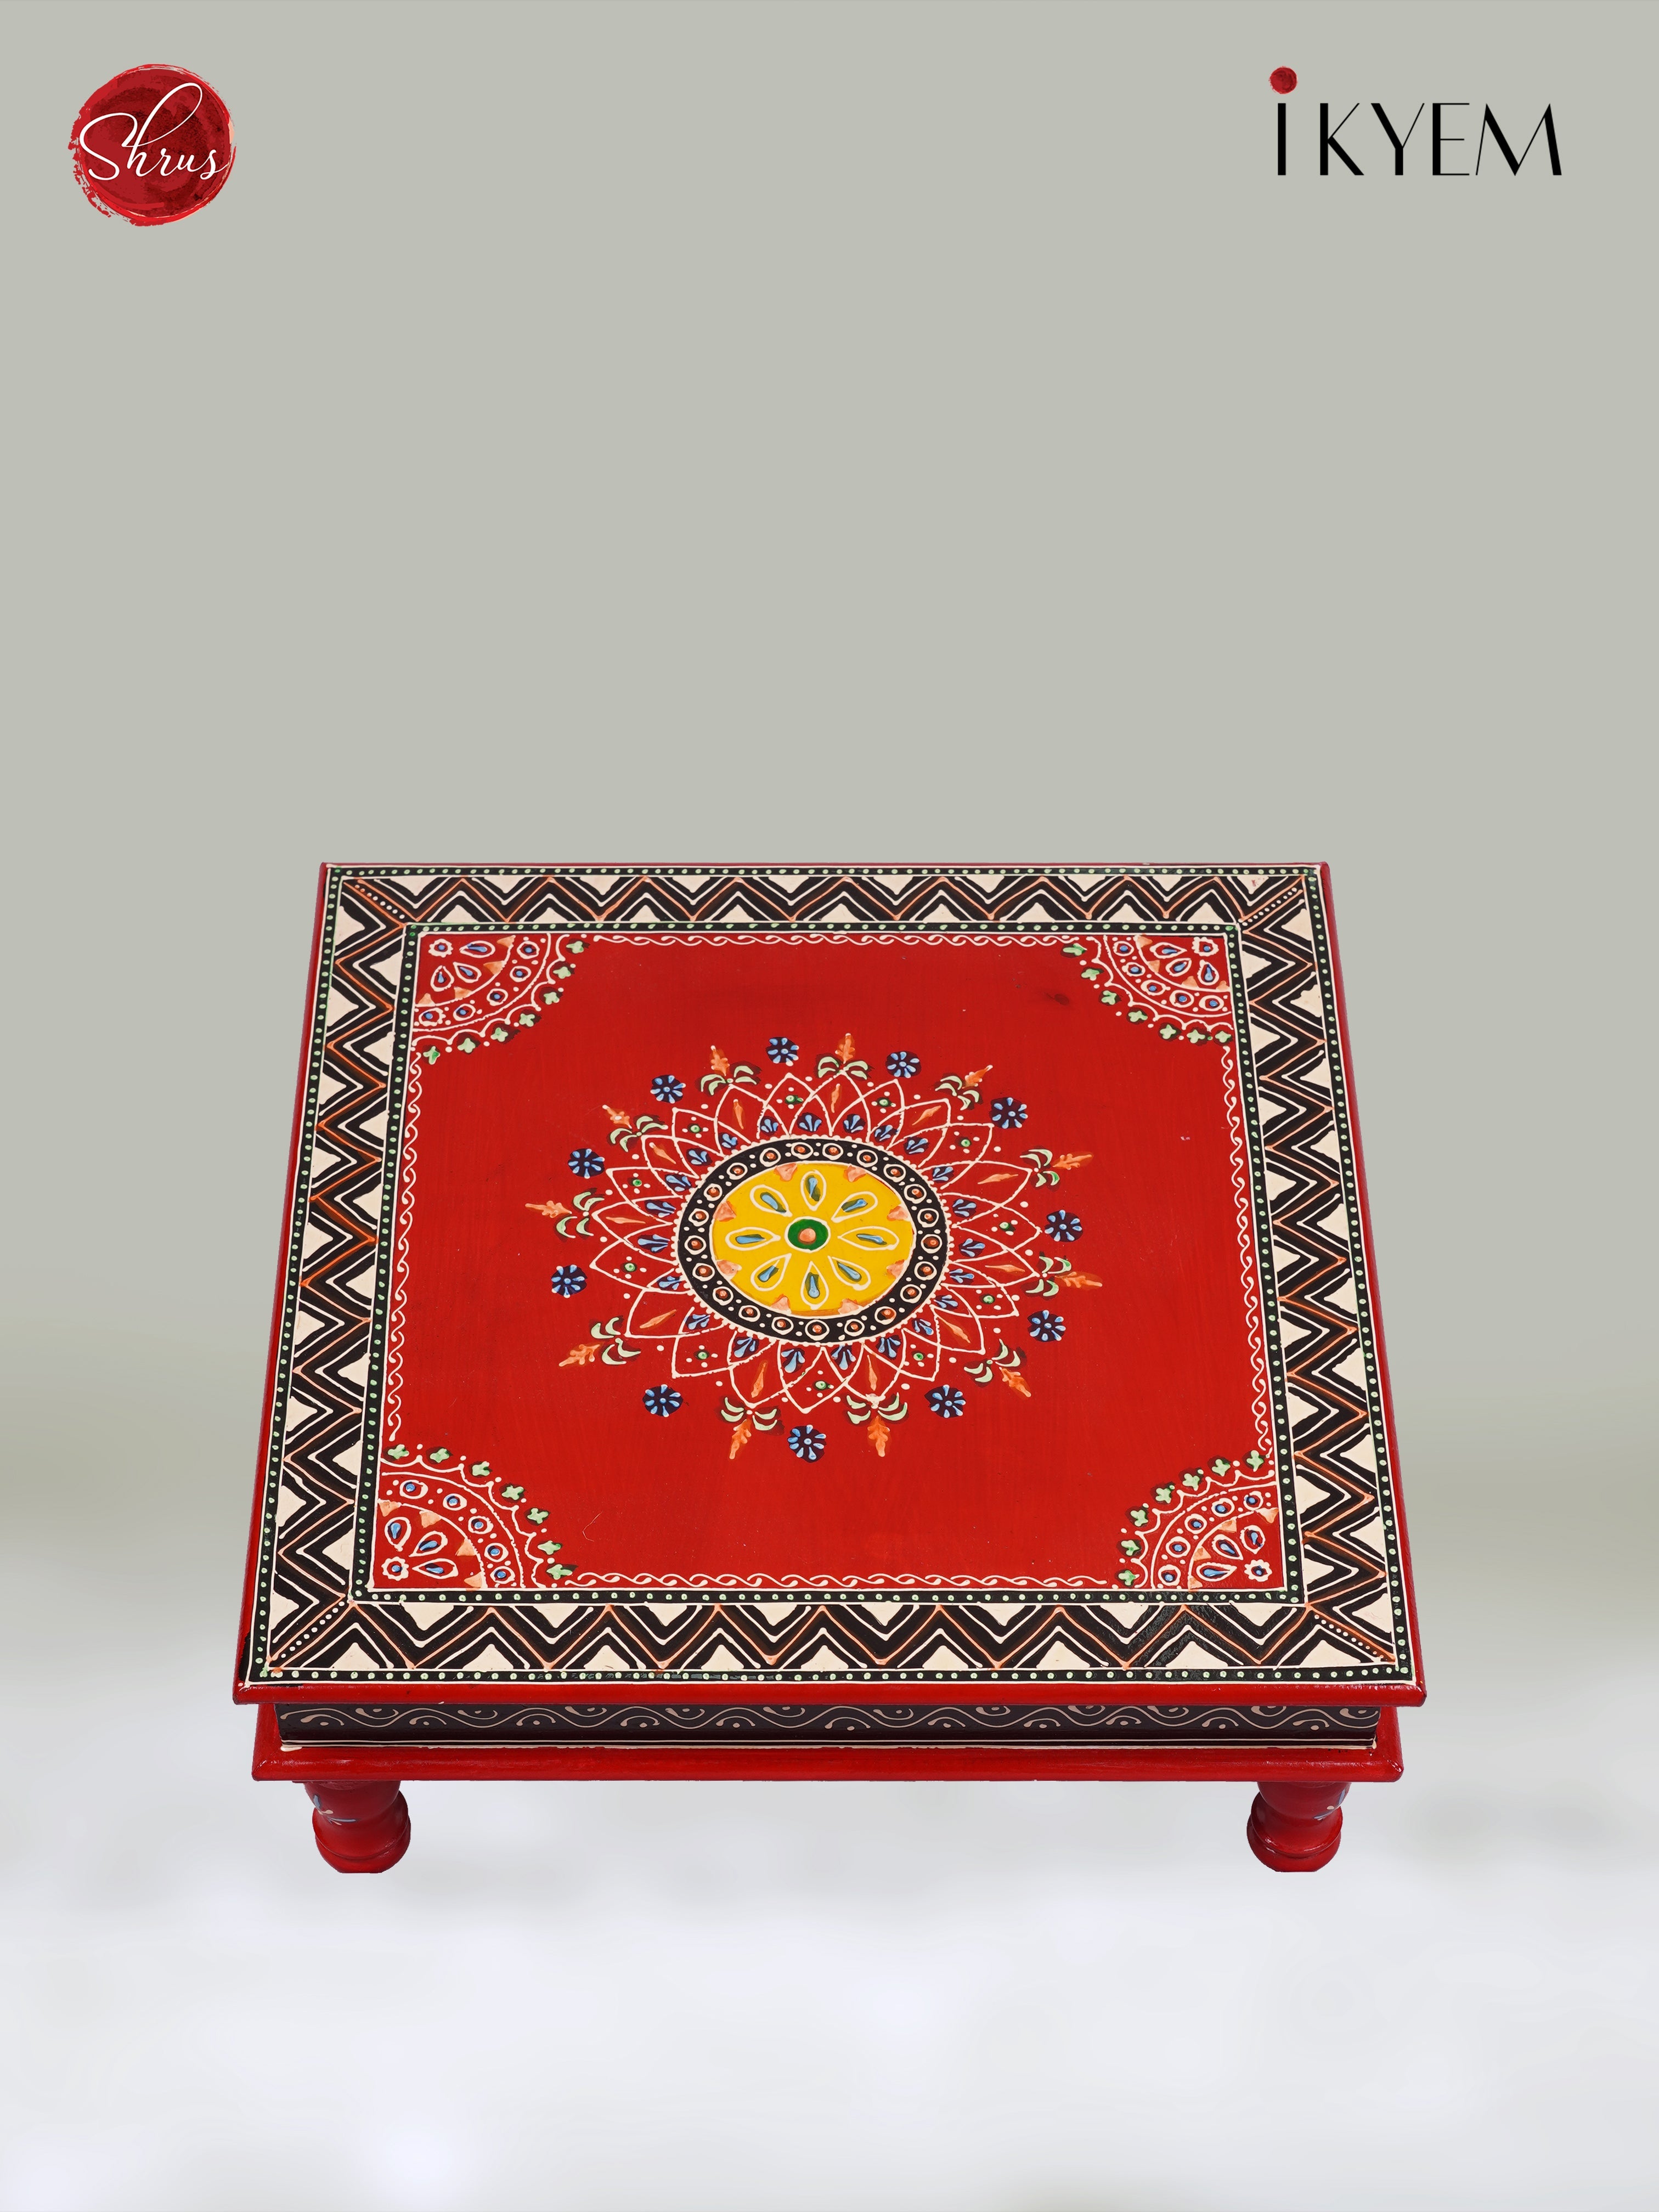 Handpainted pooja stool - Return Gift